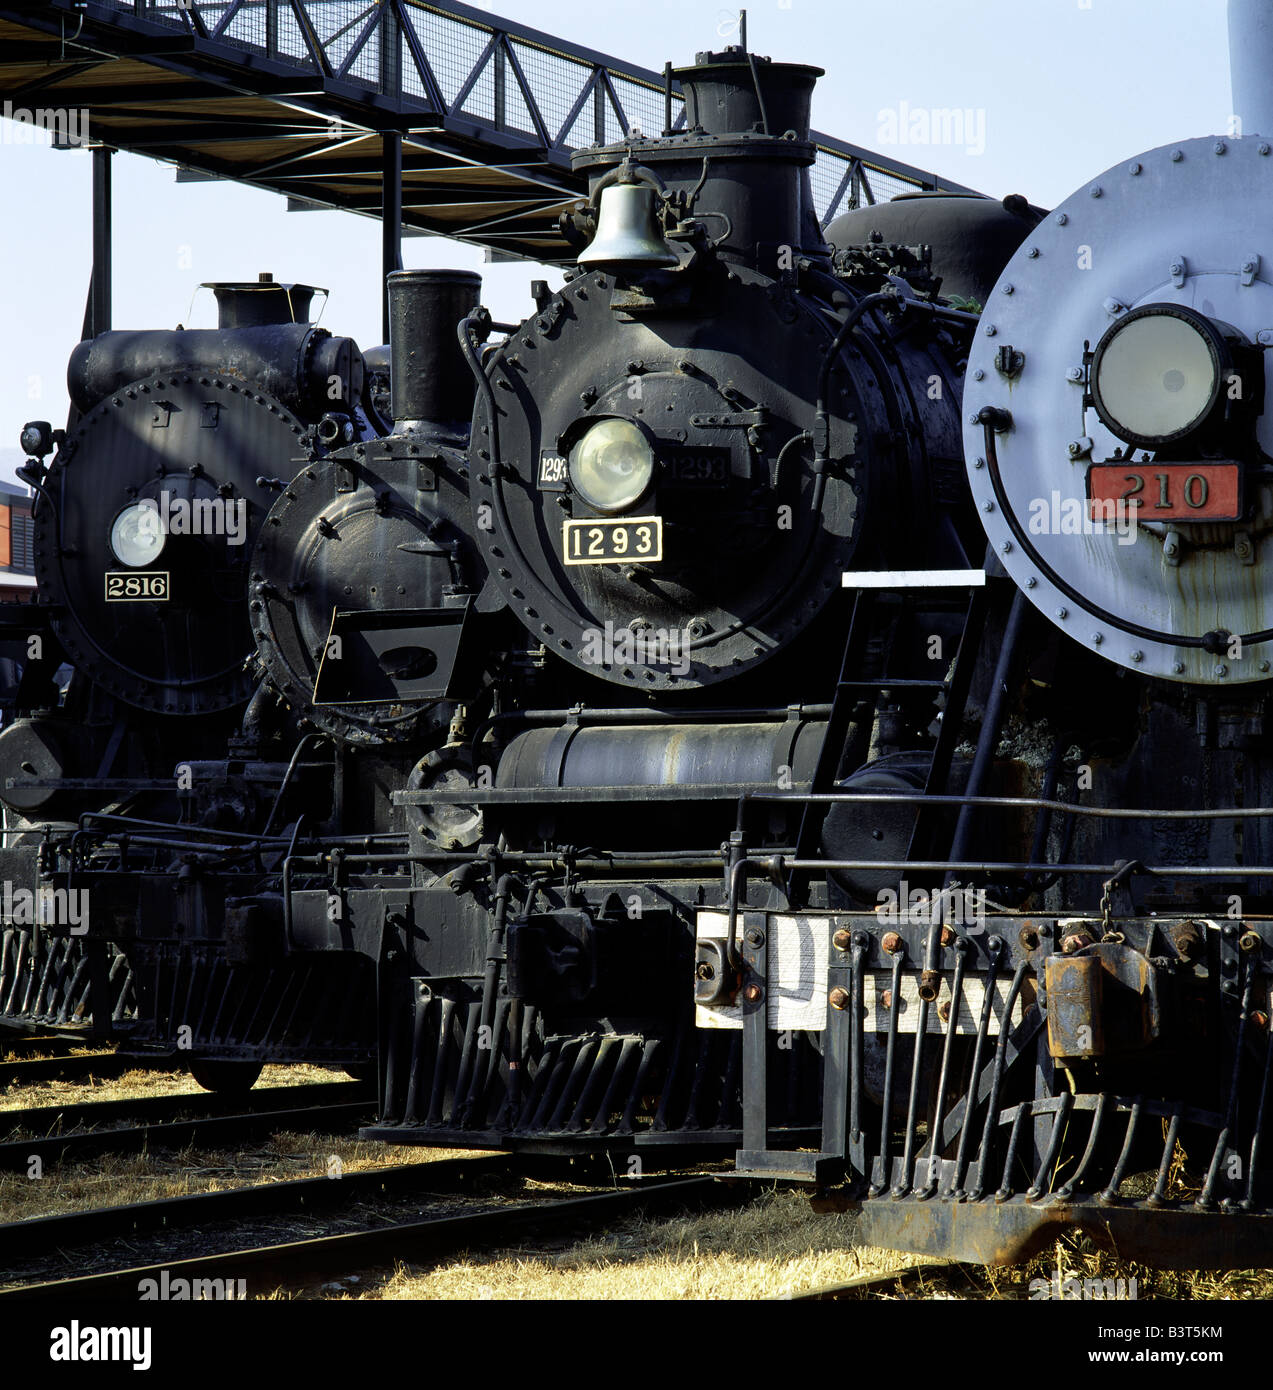 Locomotive a STEAMTOWN sito storico nazionale; più grande collezione di locomotive NEGLI STATI UNITI. SCRANTON, Pennsylvania, Stati Uniti d'America Foto Stock